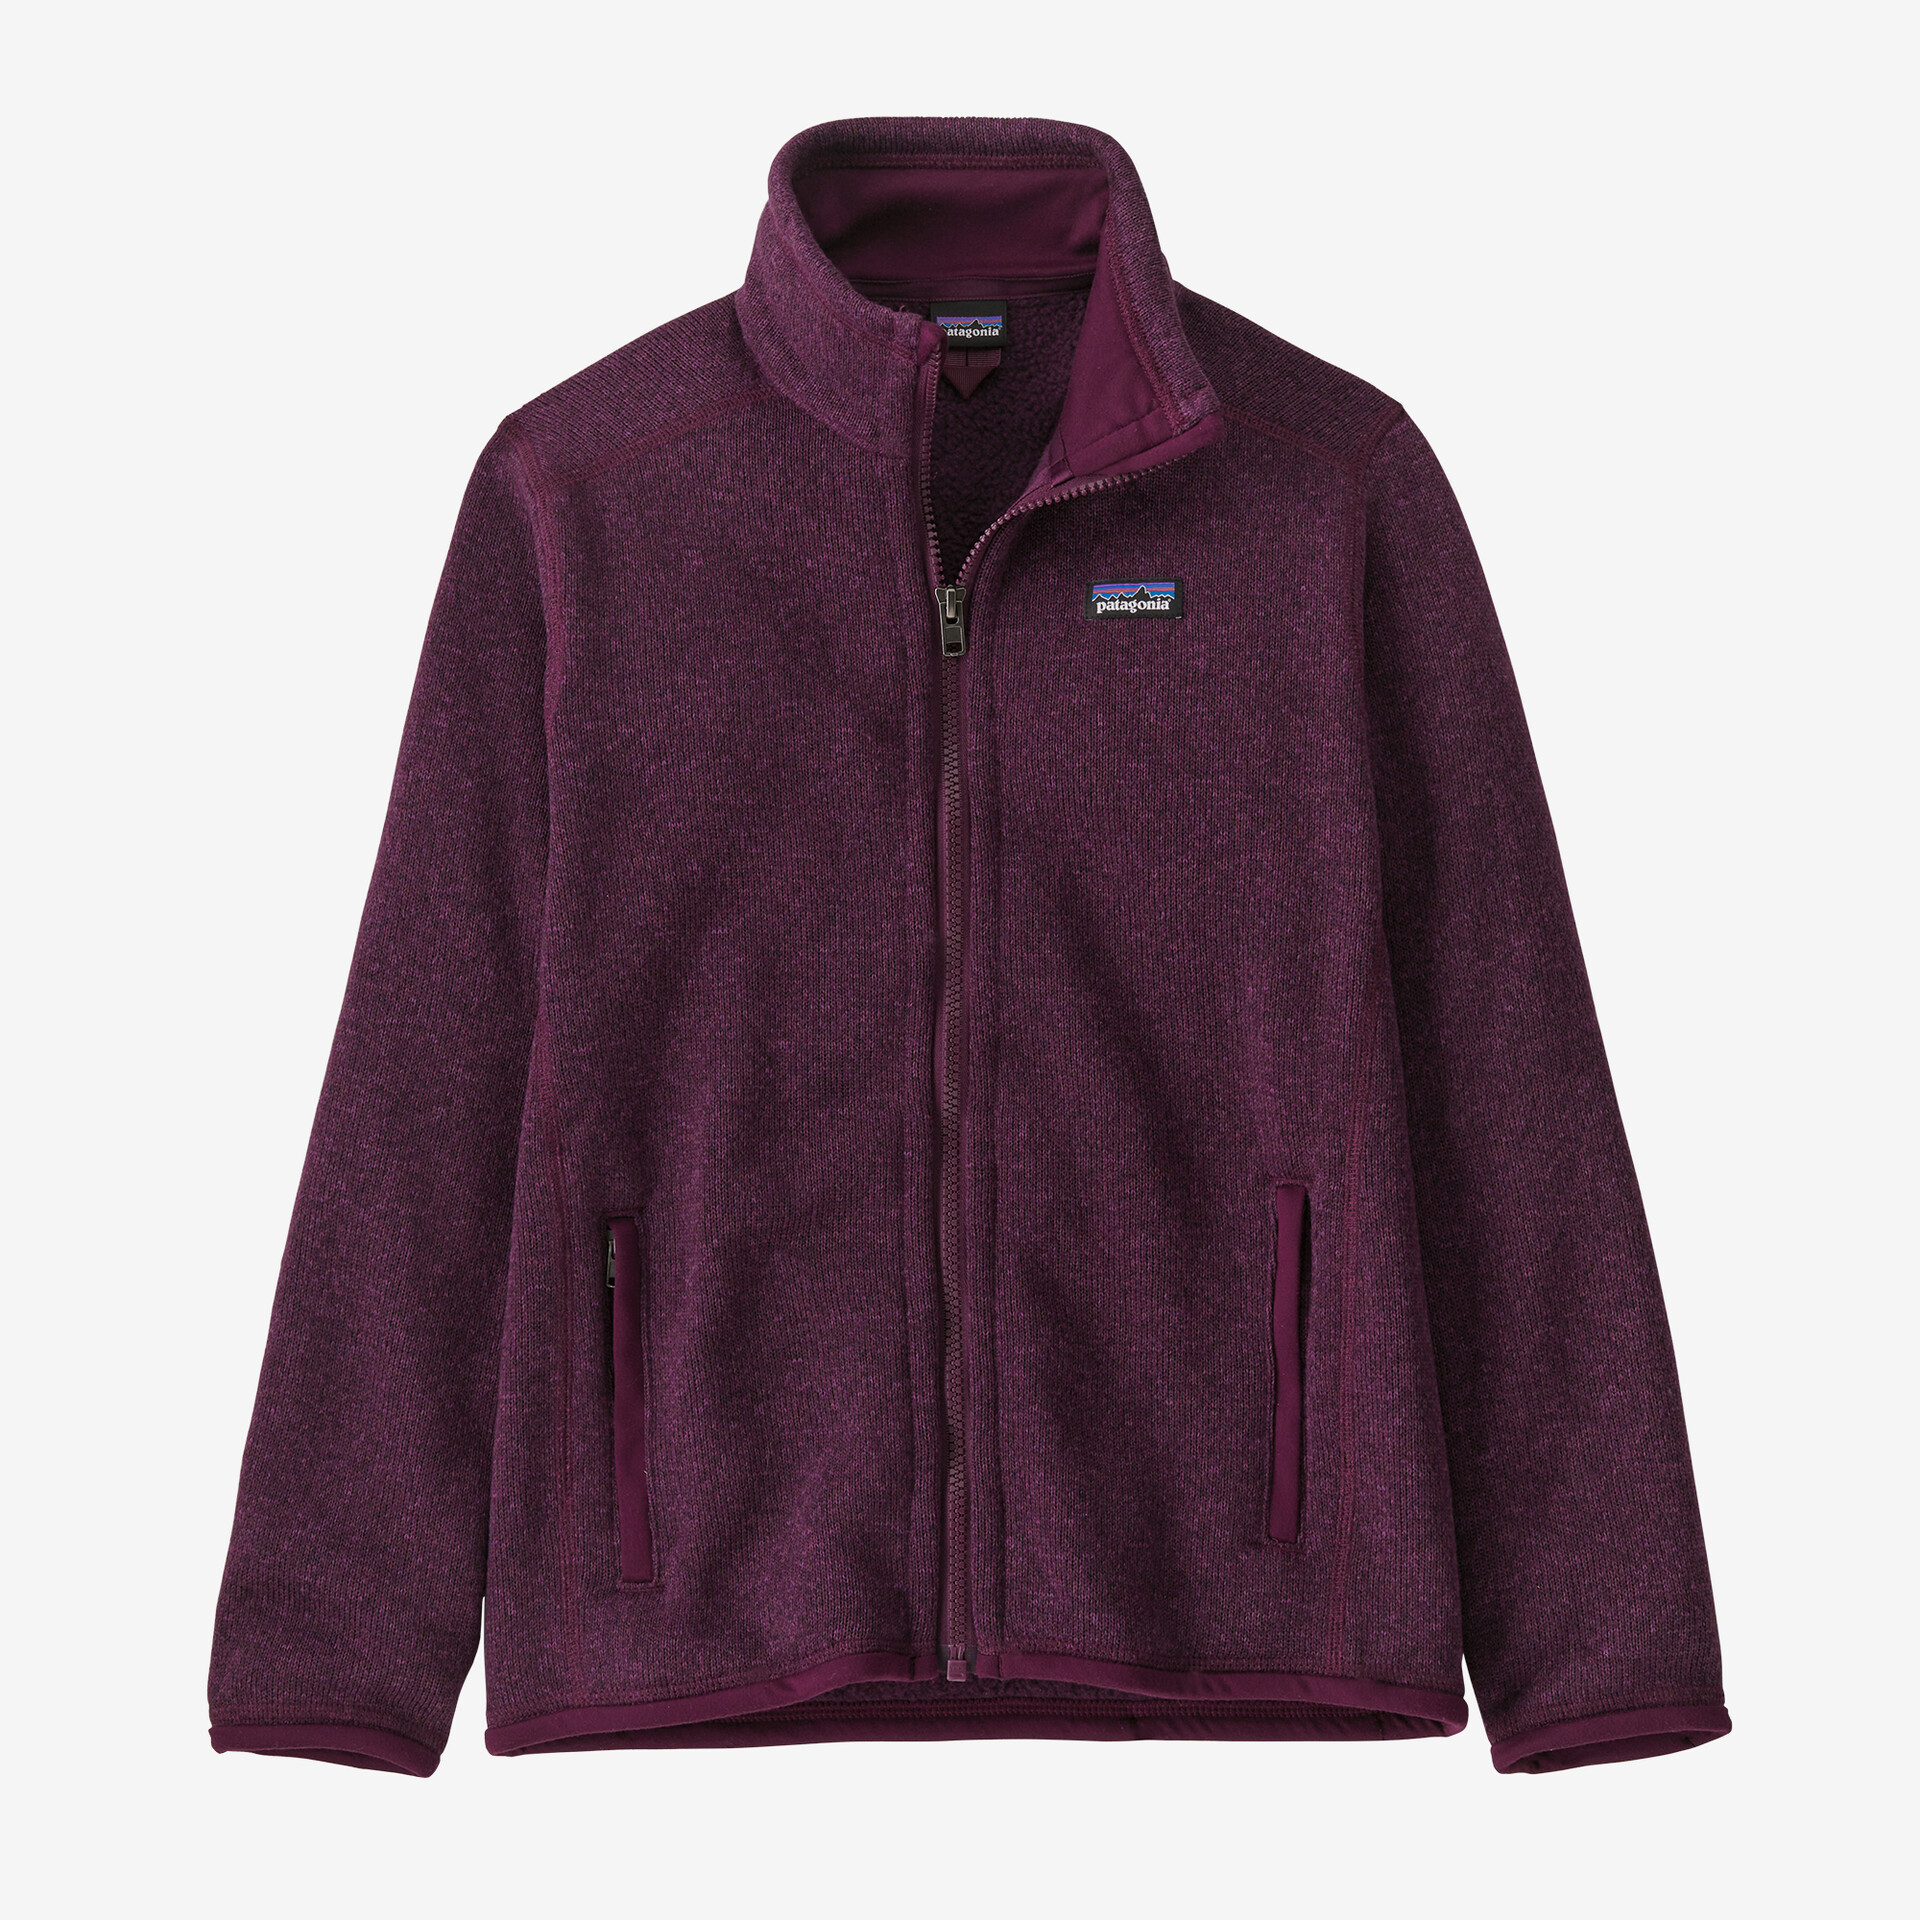 Детский свитер, флисовая куртка Patagonia, цвет Night Plum детский свитер флисовая куртка patagonia цвет night plum